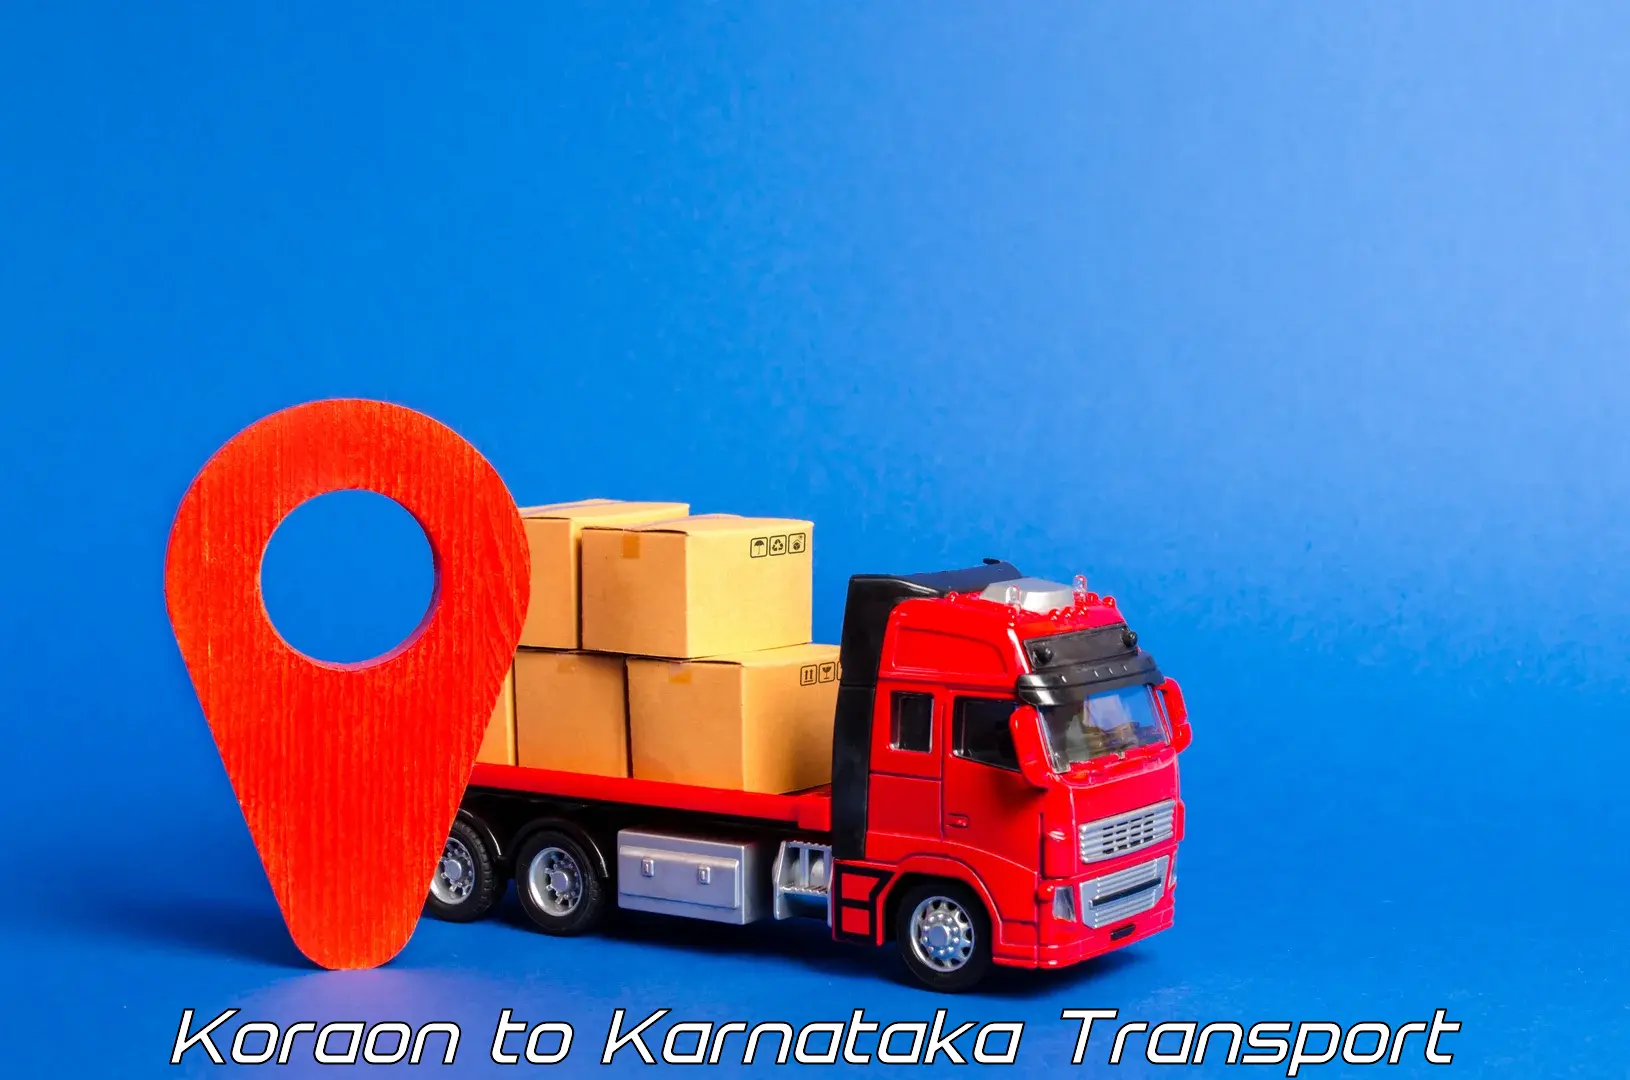 Transport in sharing Koraon to Kanjarakatte